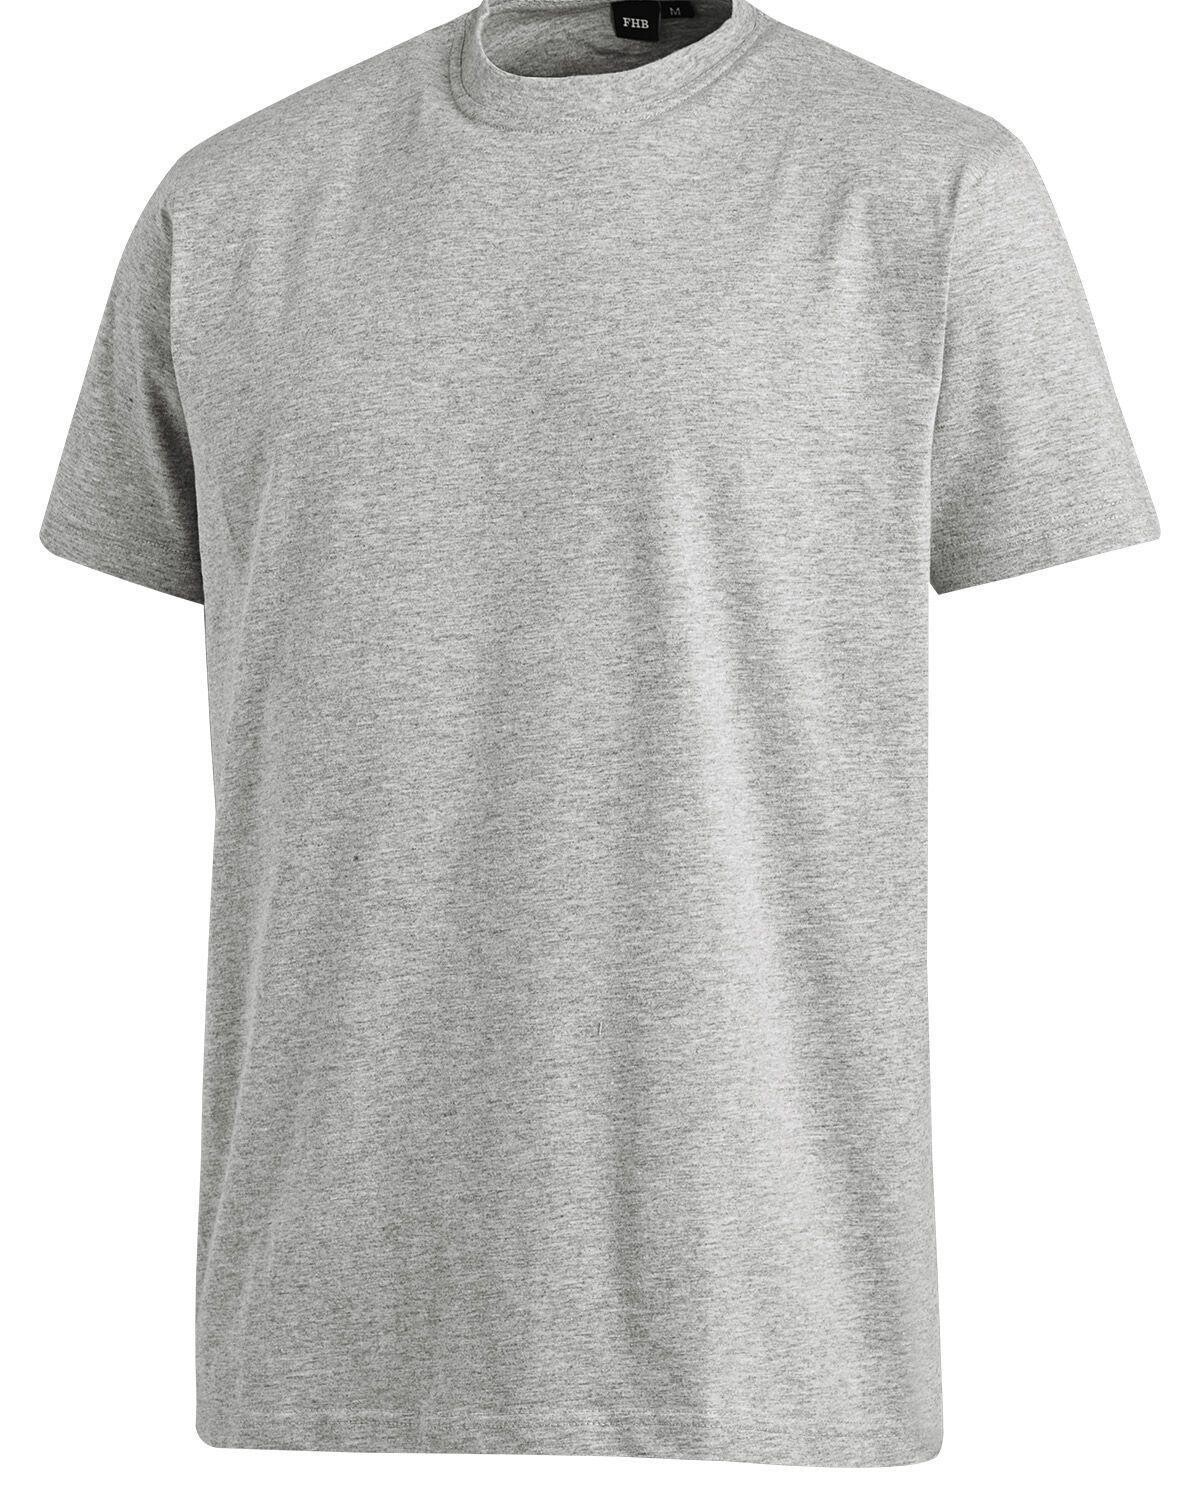 FHB T-Shirt - Jens (Grå, 3XL)